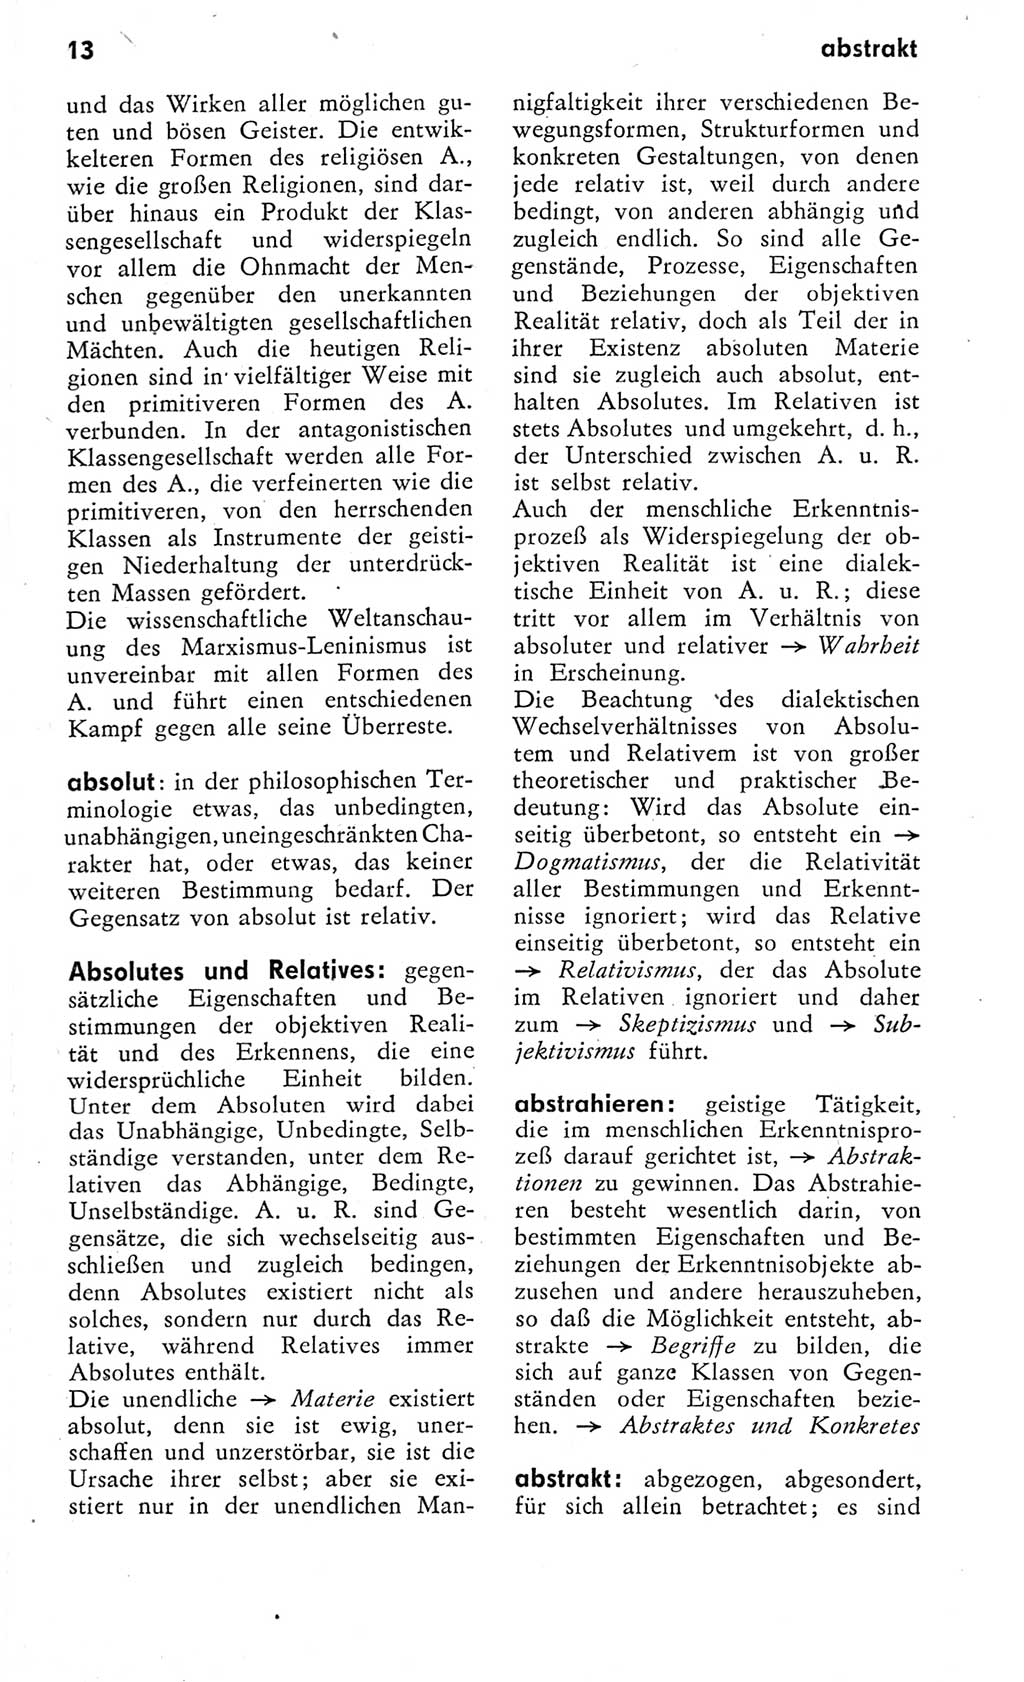 Kleines Wörterbuch der marxistisch-leninistischen Philosophie [Deutsche Demokratische Republik (DDR)] 1975, Seite 13 (Kl. Wb. ML Phil. DDR 1975, S. 13)